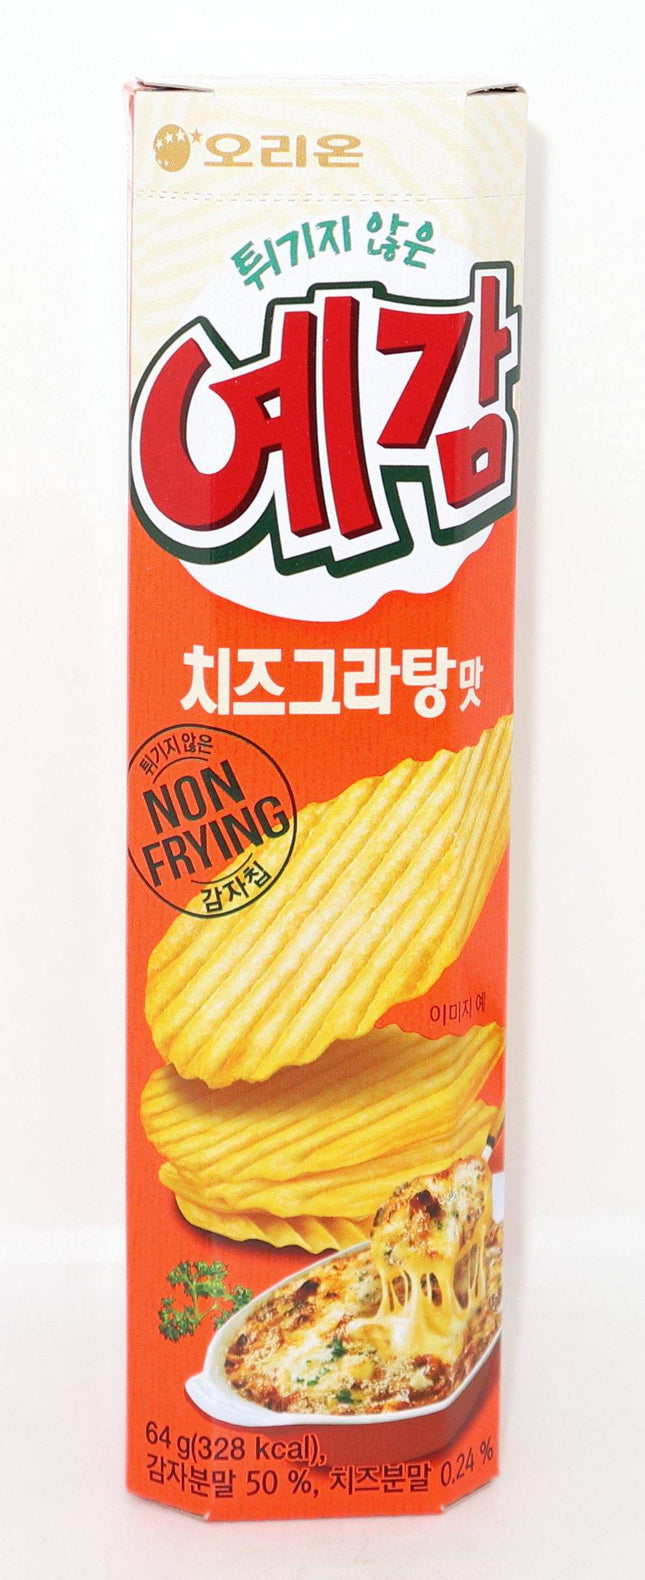 Orion Yegam Cheese Gratin Biscuit 64g - Crown Supermarket